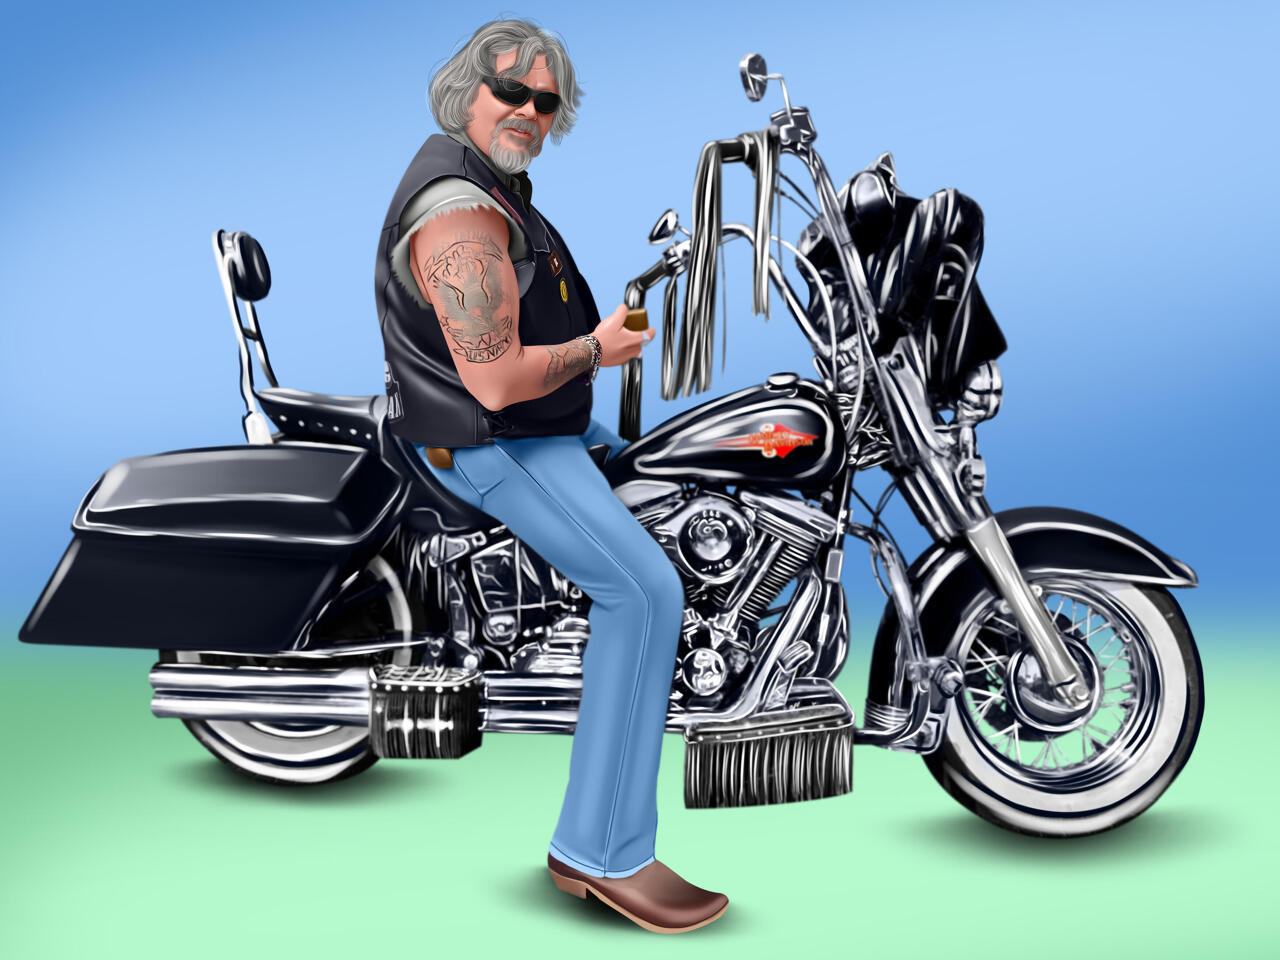 Caricatura Digital de Motoqueiro Harleyro